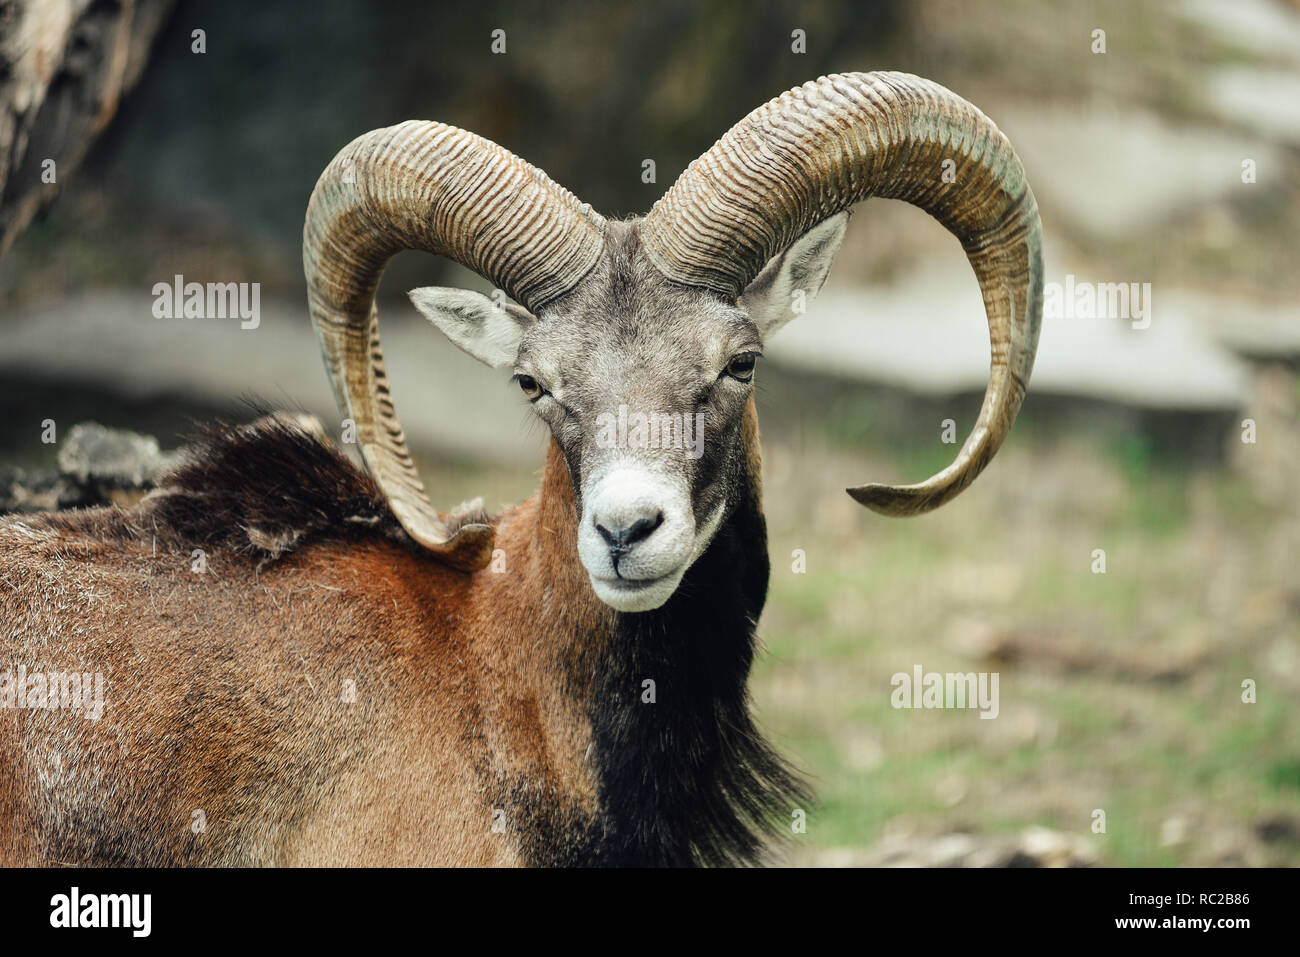 Portrait of the mouflon ram / goat. Stock Photo